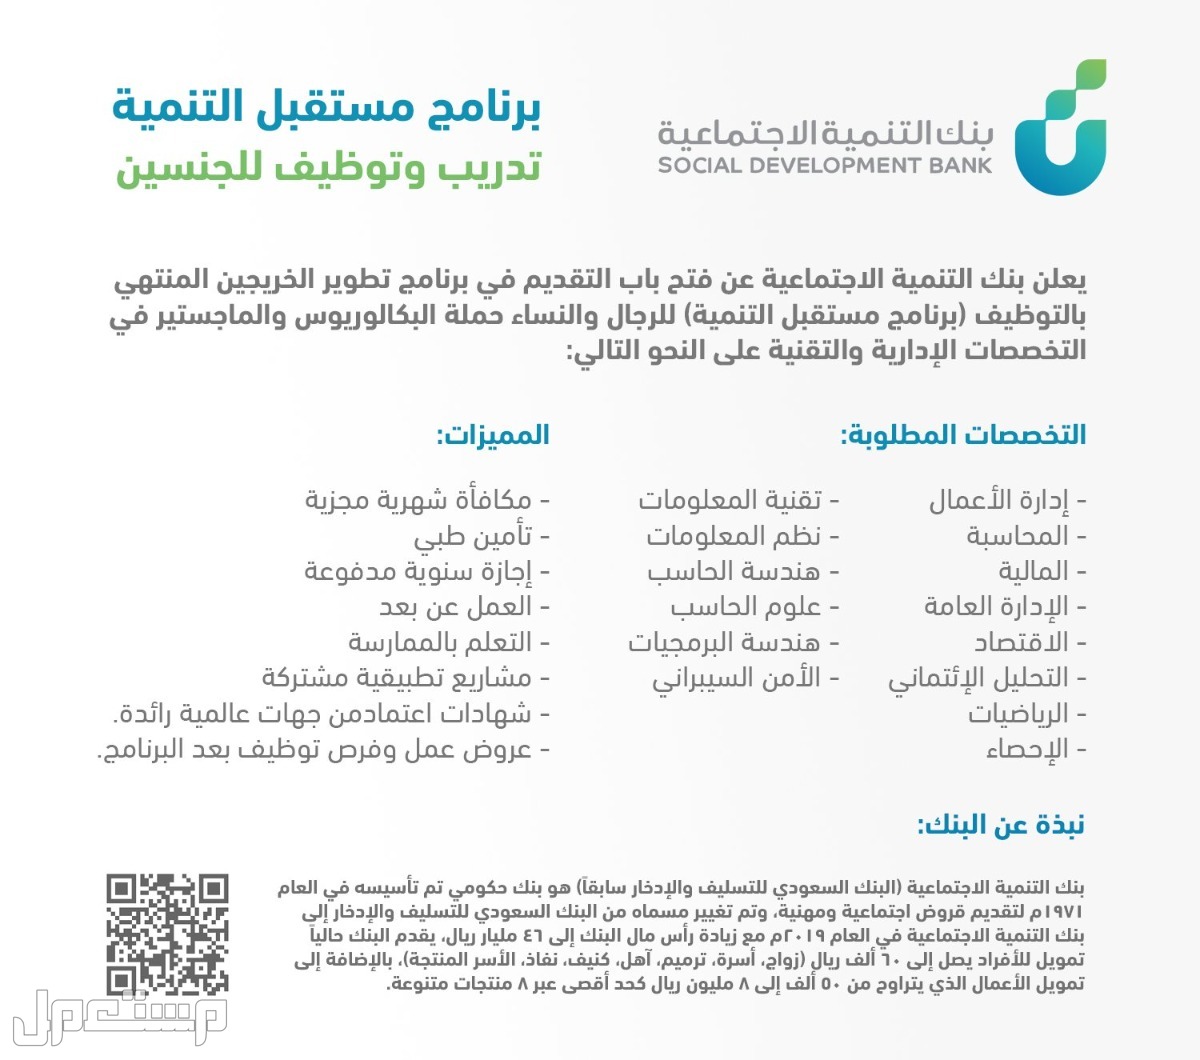 كيفية التقديم على برنامج مستقبل التنمية للخريجين في بنك التنمية الاجتماعية في الكويت